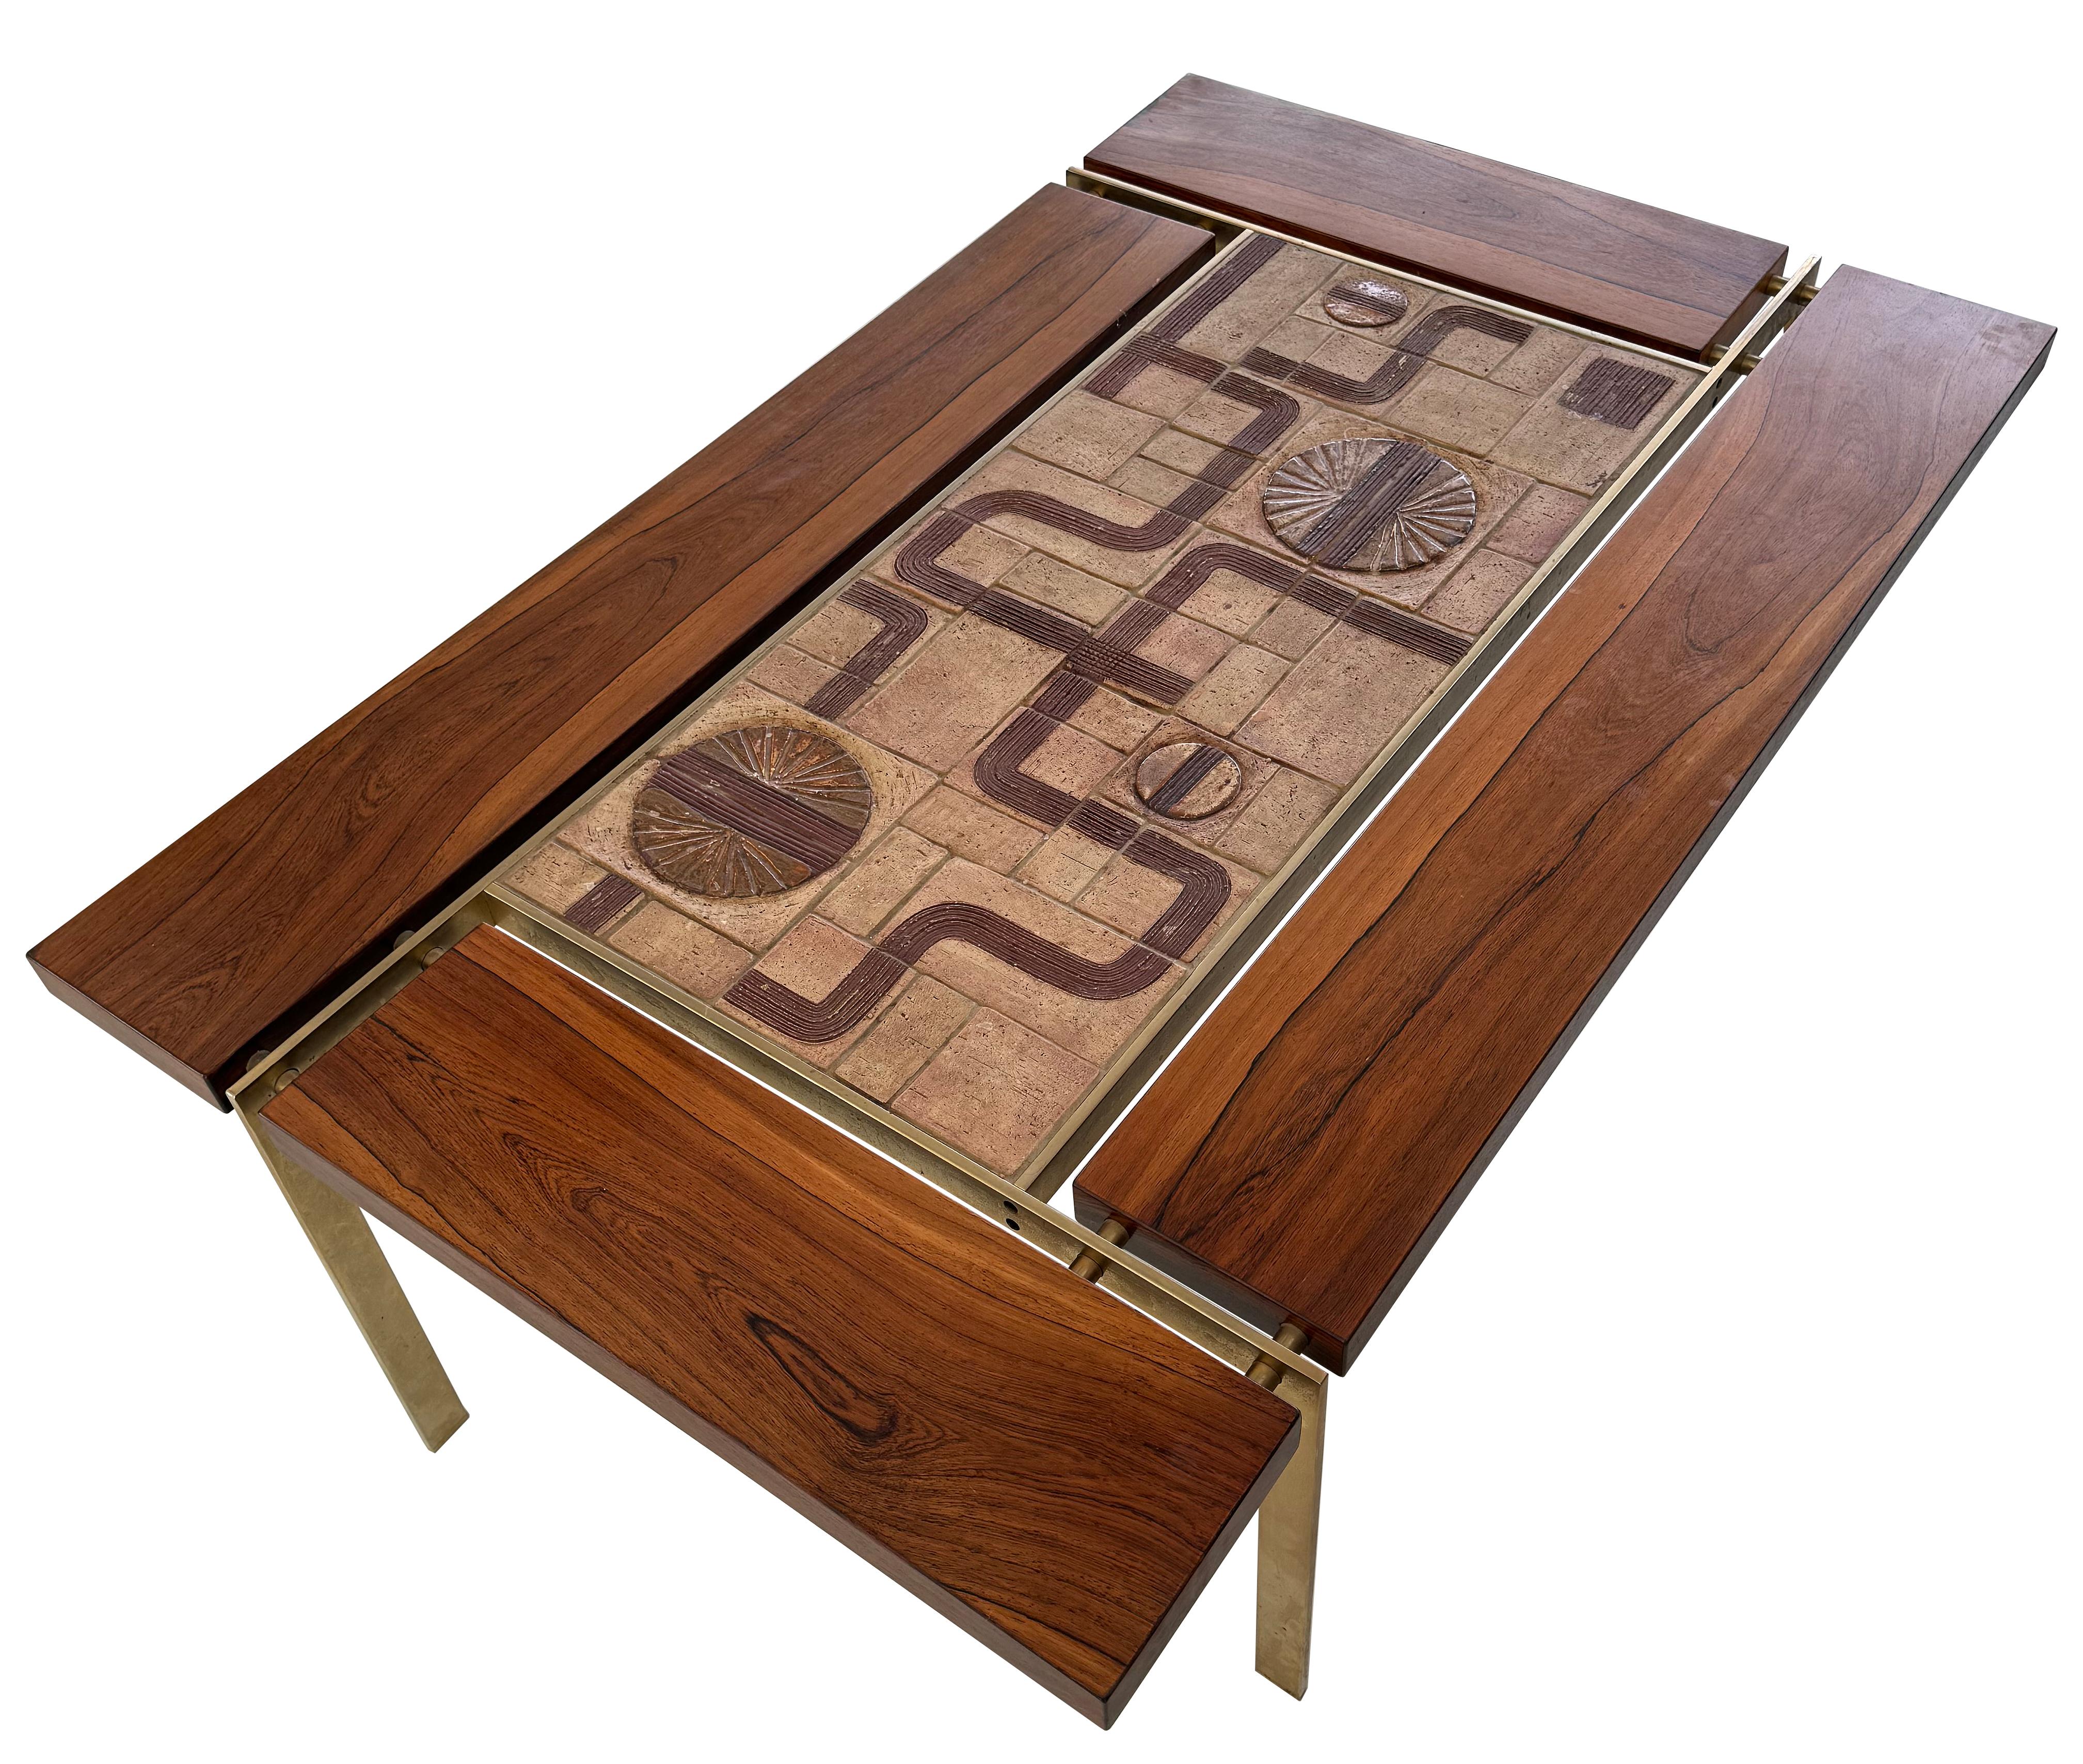 Une incroyable table basse en bois de rose et laiton par Svend Aage Jessen vers 1965.     Cette table a une présence et une envergure incroyables.  Des segments en bois de rose sont fixés avec des entretoises en laiton massif autour d'un grand